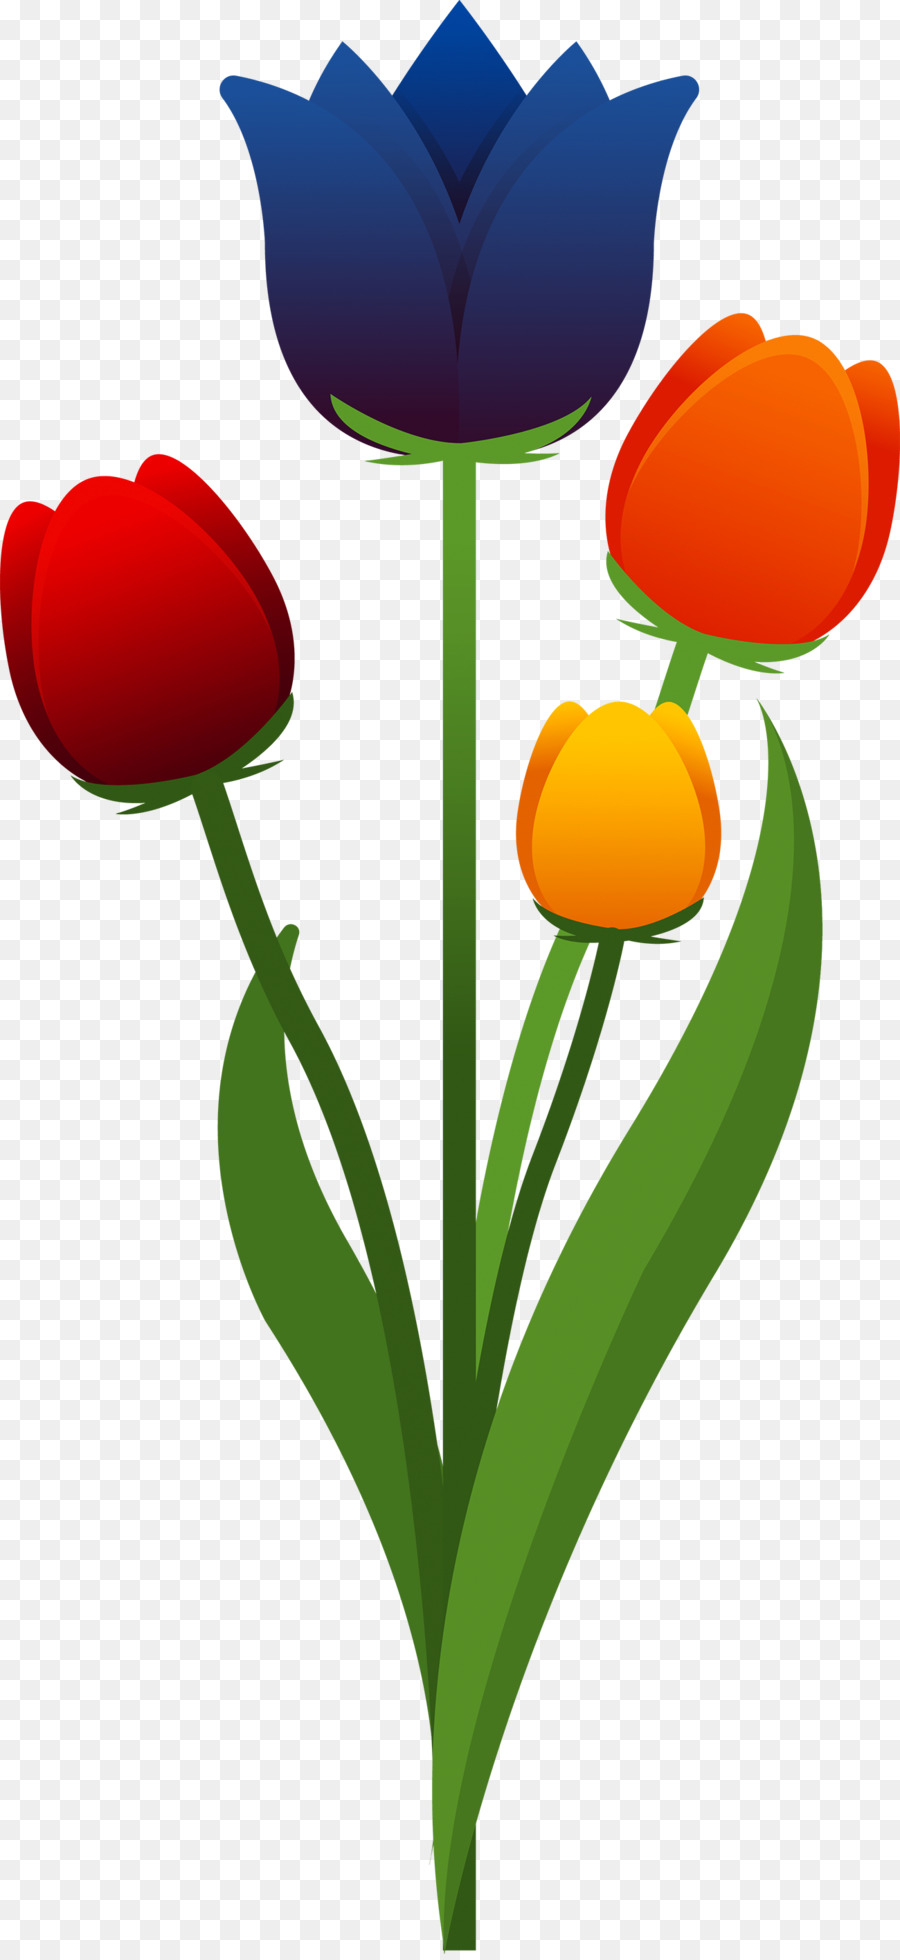 fiore di tulipano - Tulipano